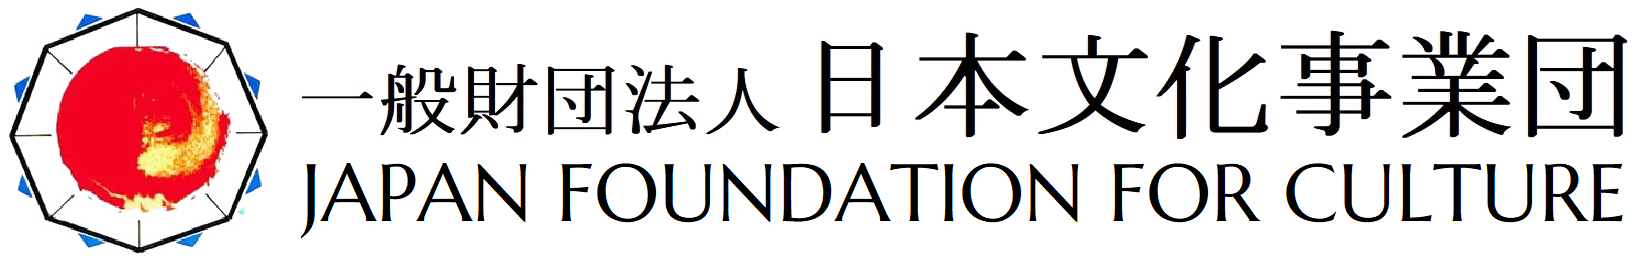 一般財団法人 日本文化事業団